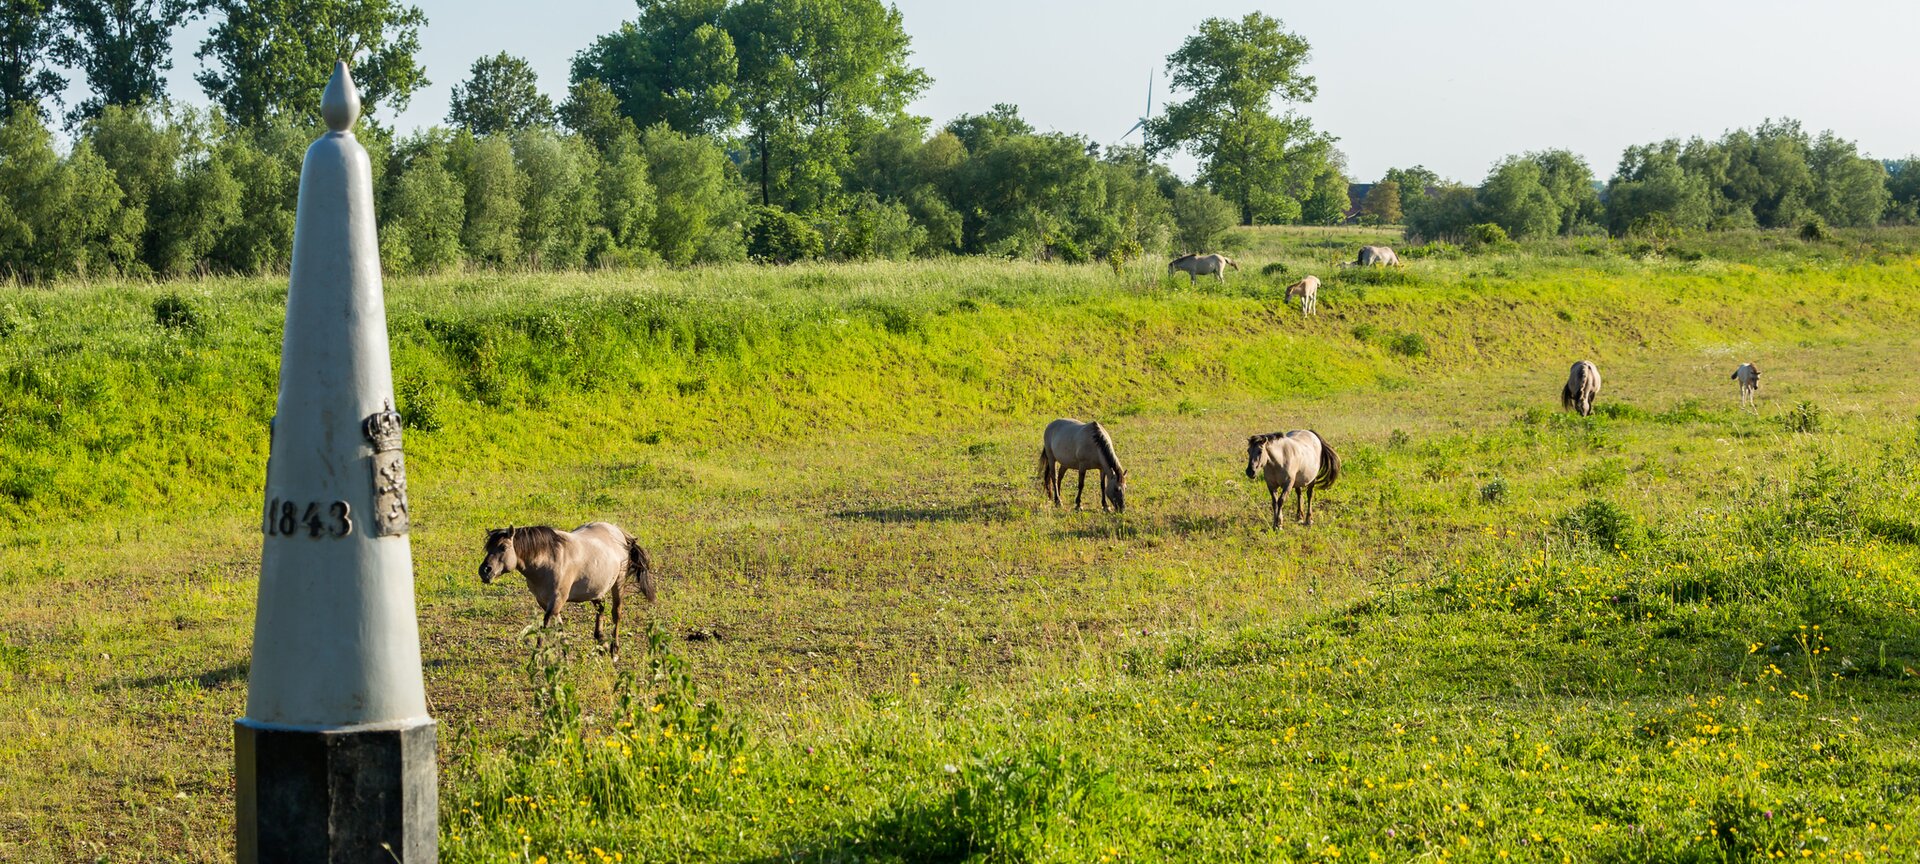 Wandelgebied Leut - Konikpaarden in natuurgebied Mazenhoven.